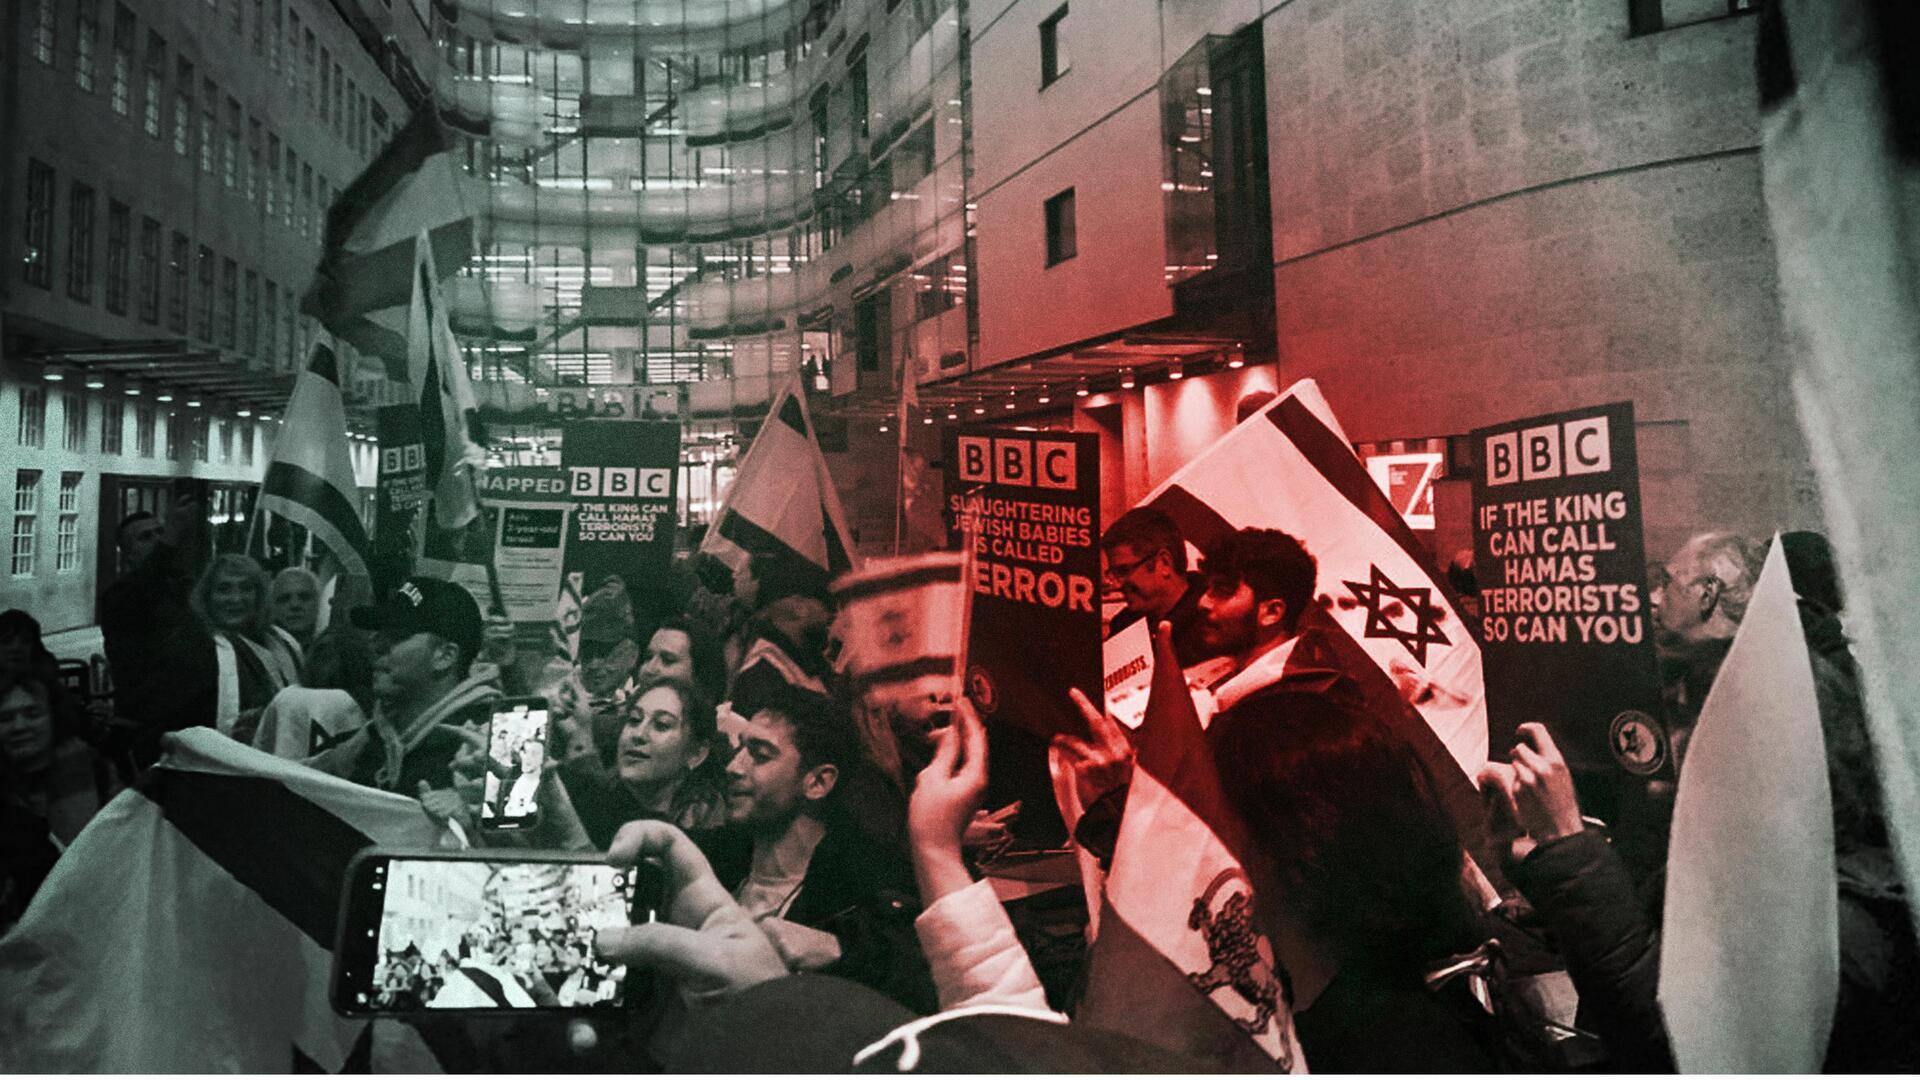 BBC मुख्यालय के बाहर भारी विरोध प्रदर्शन, हमास को 'आतंकी संगठन' कहने से किया था इनकार